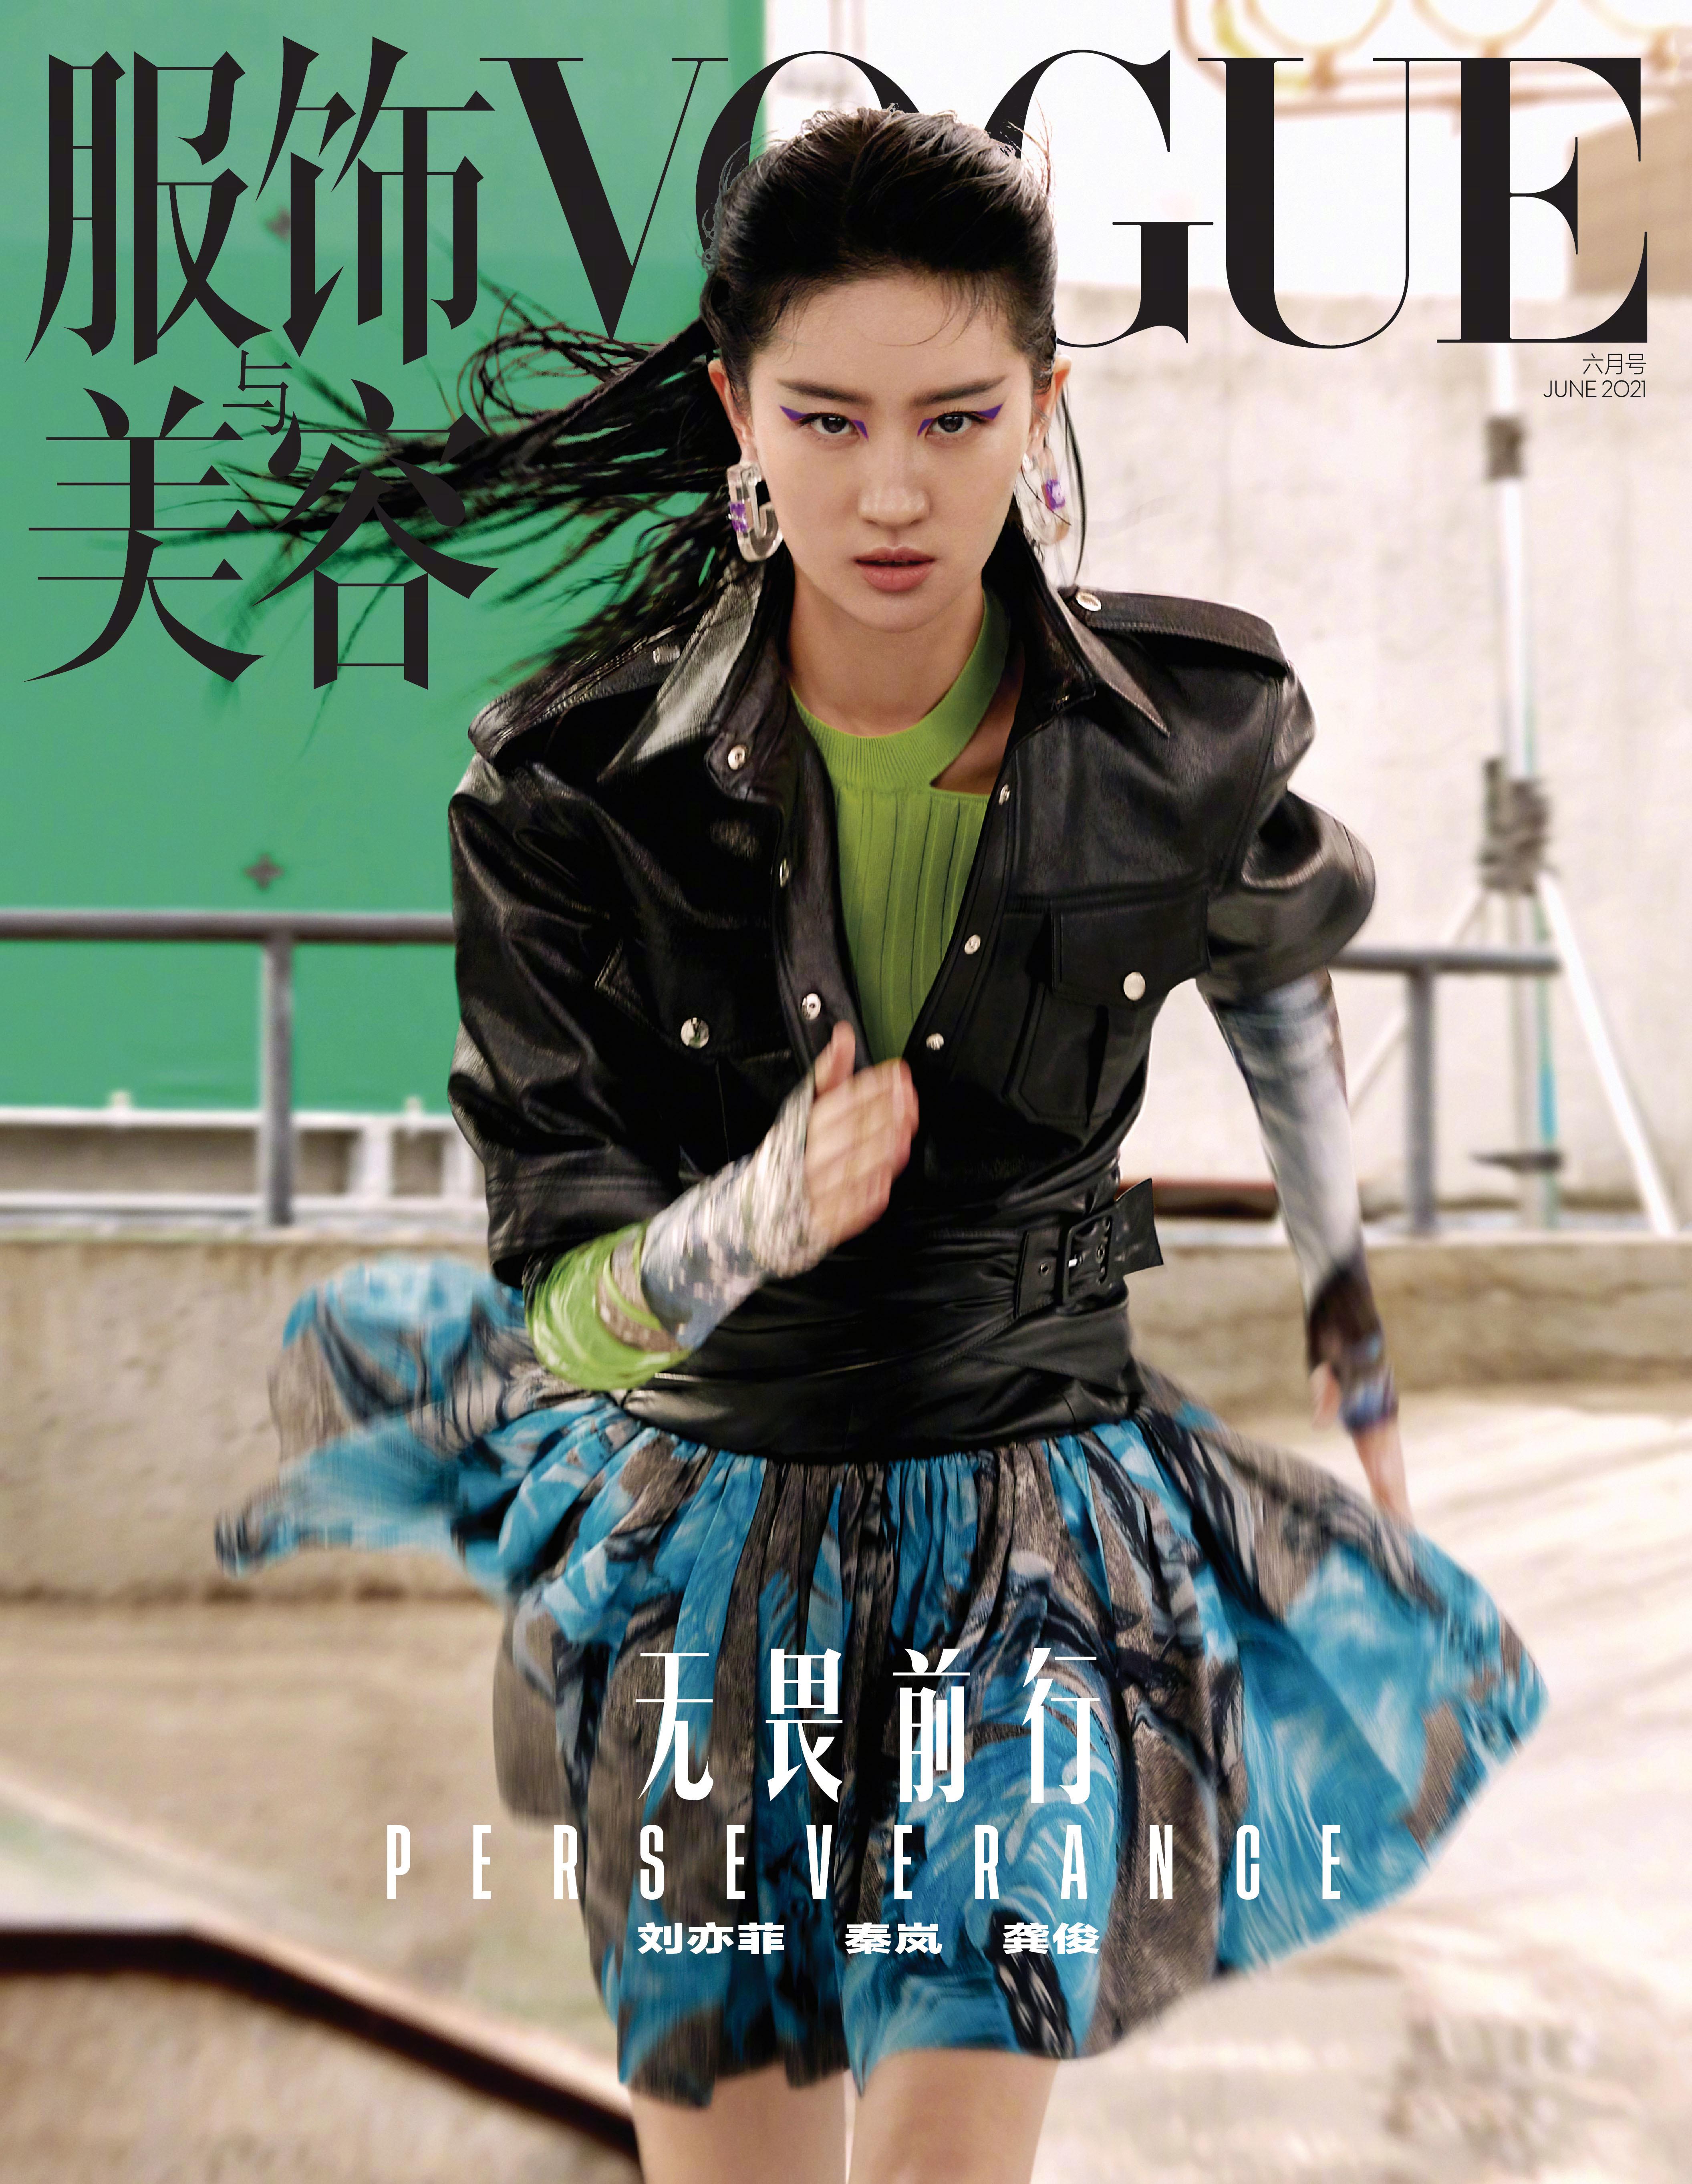 刘亦菲再登Vogue封面 化紫色猫眼妆演绎酷飒运动风,